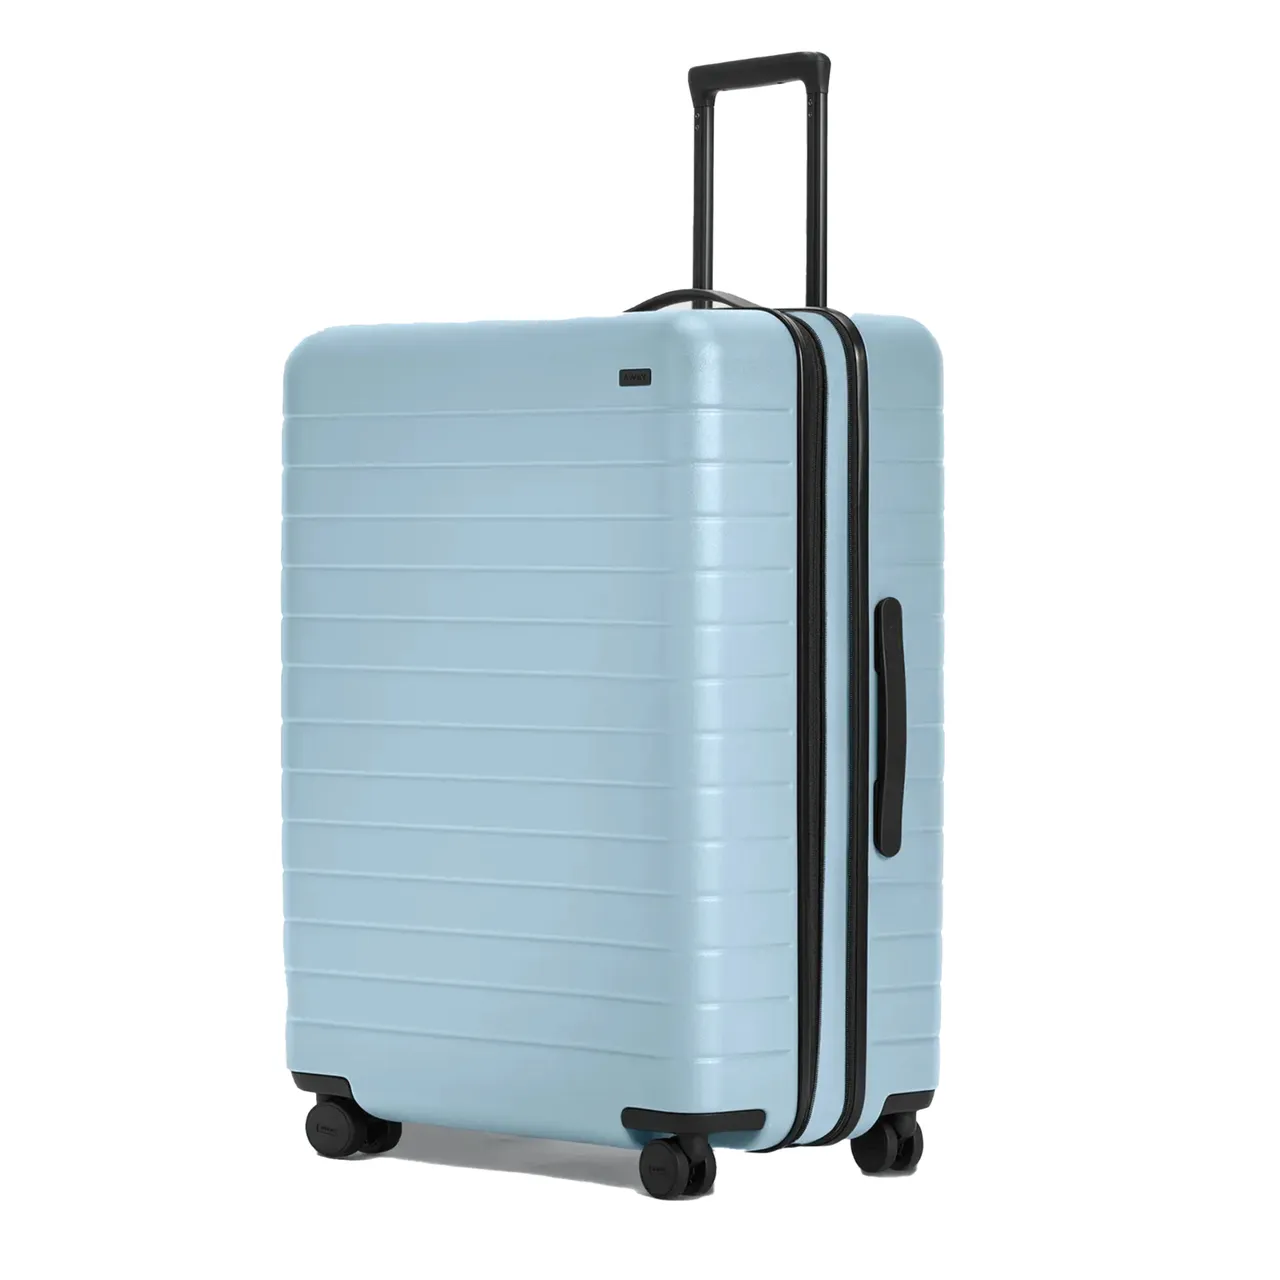 The large flex suitcase